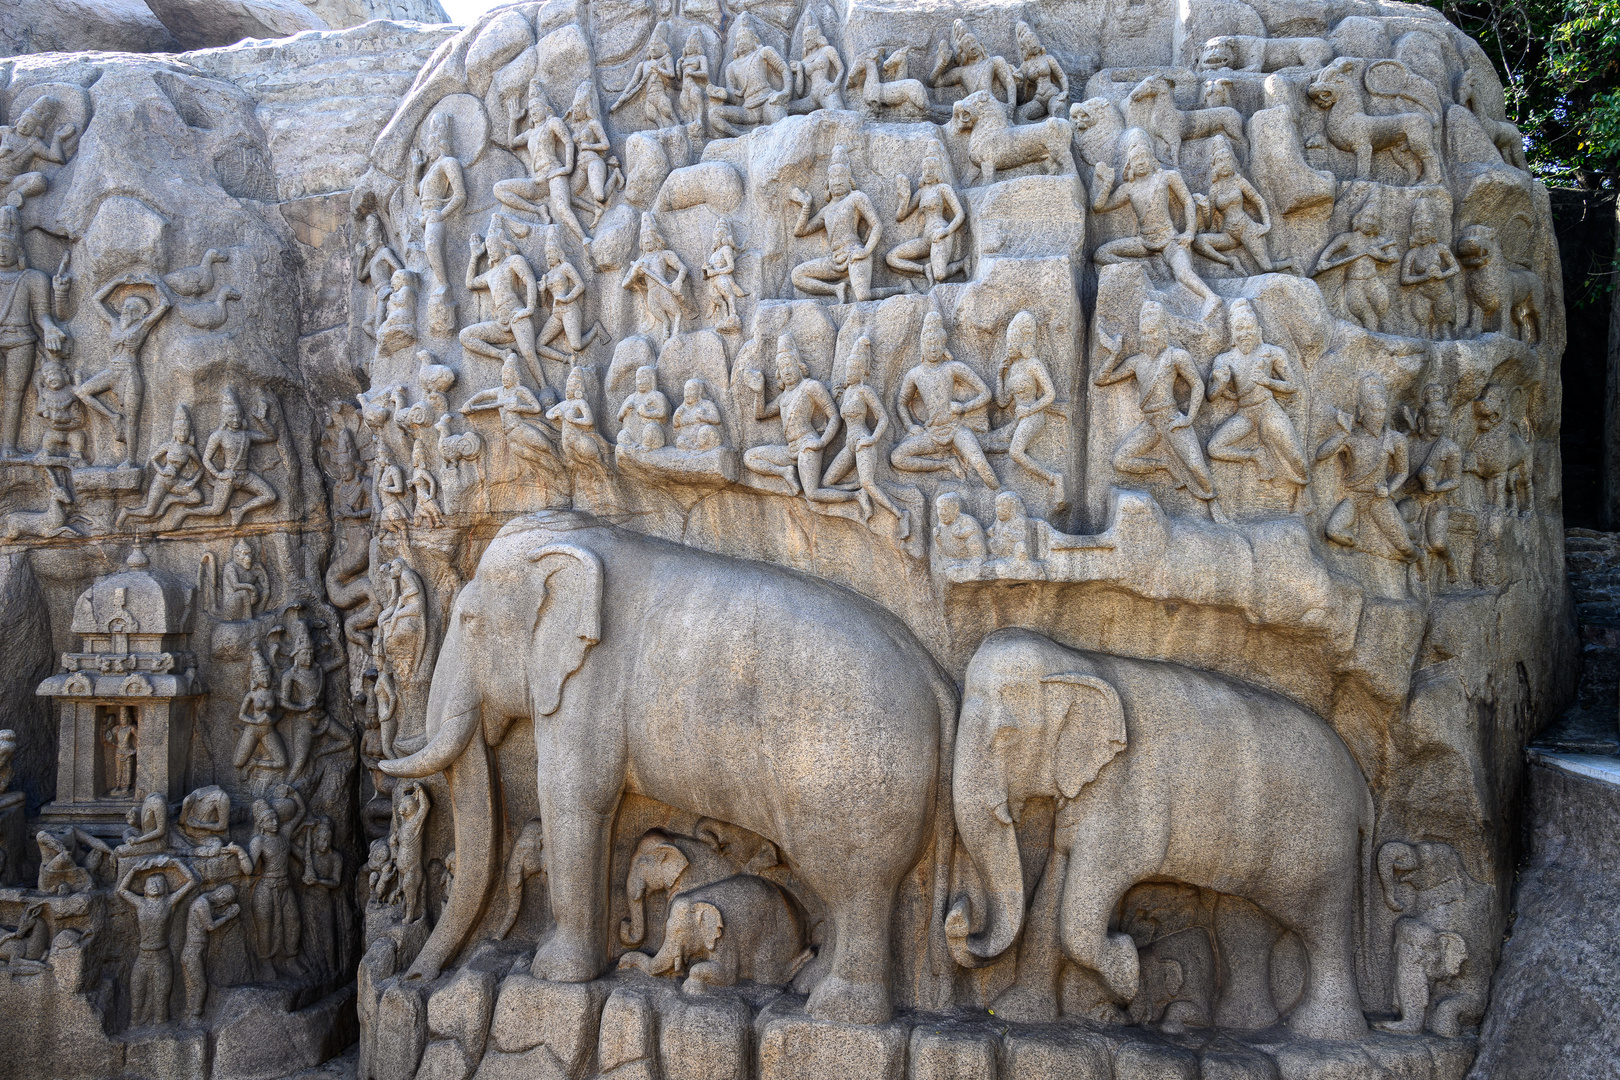 Mahishasura Mardini cave